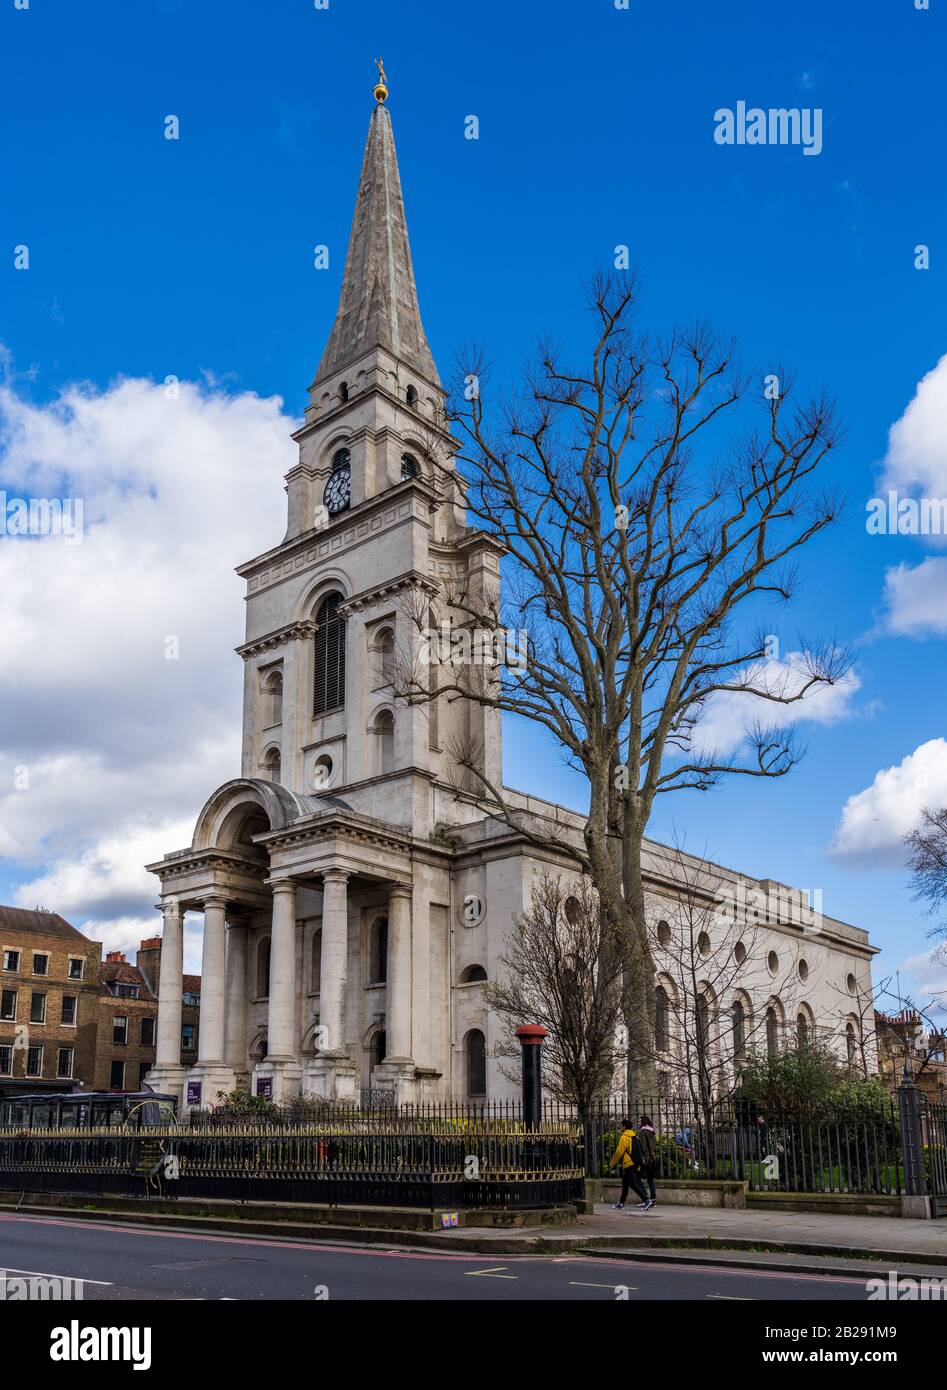 Christus Kirche Spitalfields, East London. Anglikanische Kirche zwischen 1714 und 1729 gebaut. Architekt Nicholas Hawksmoor. Stockfoto